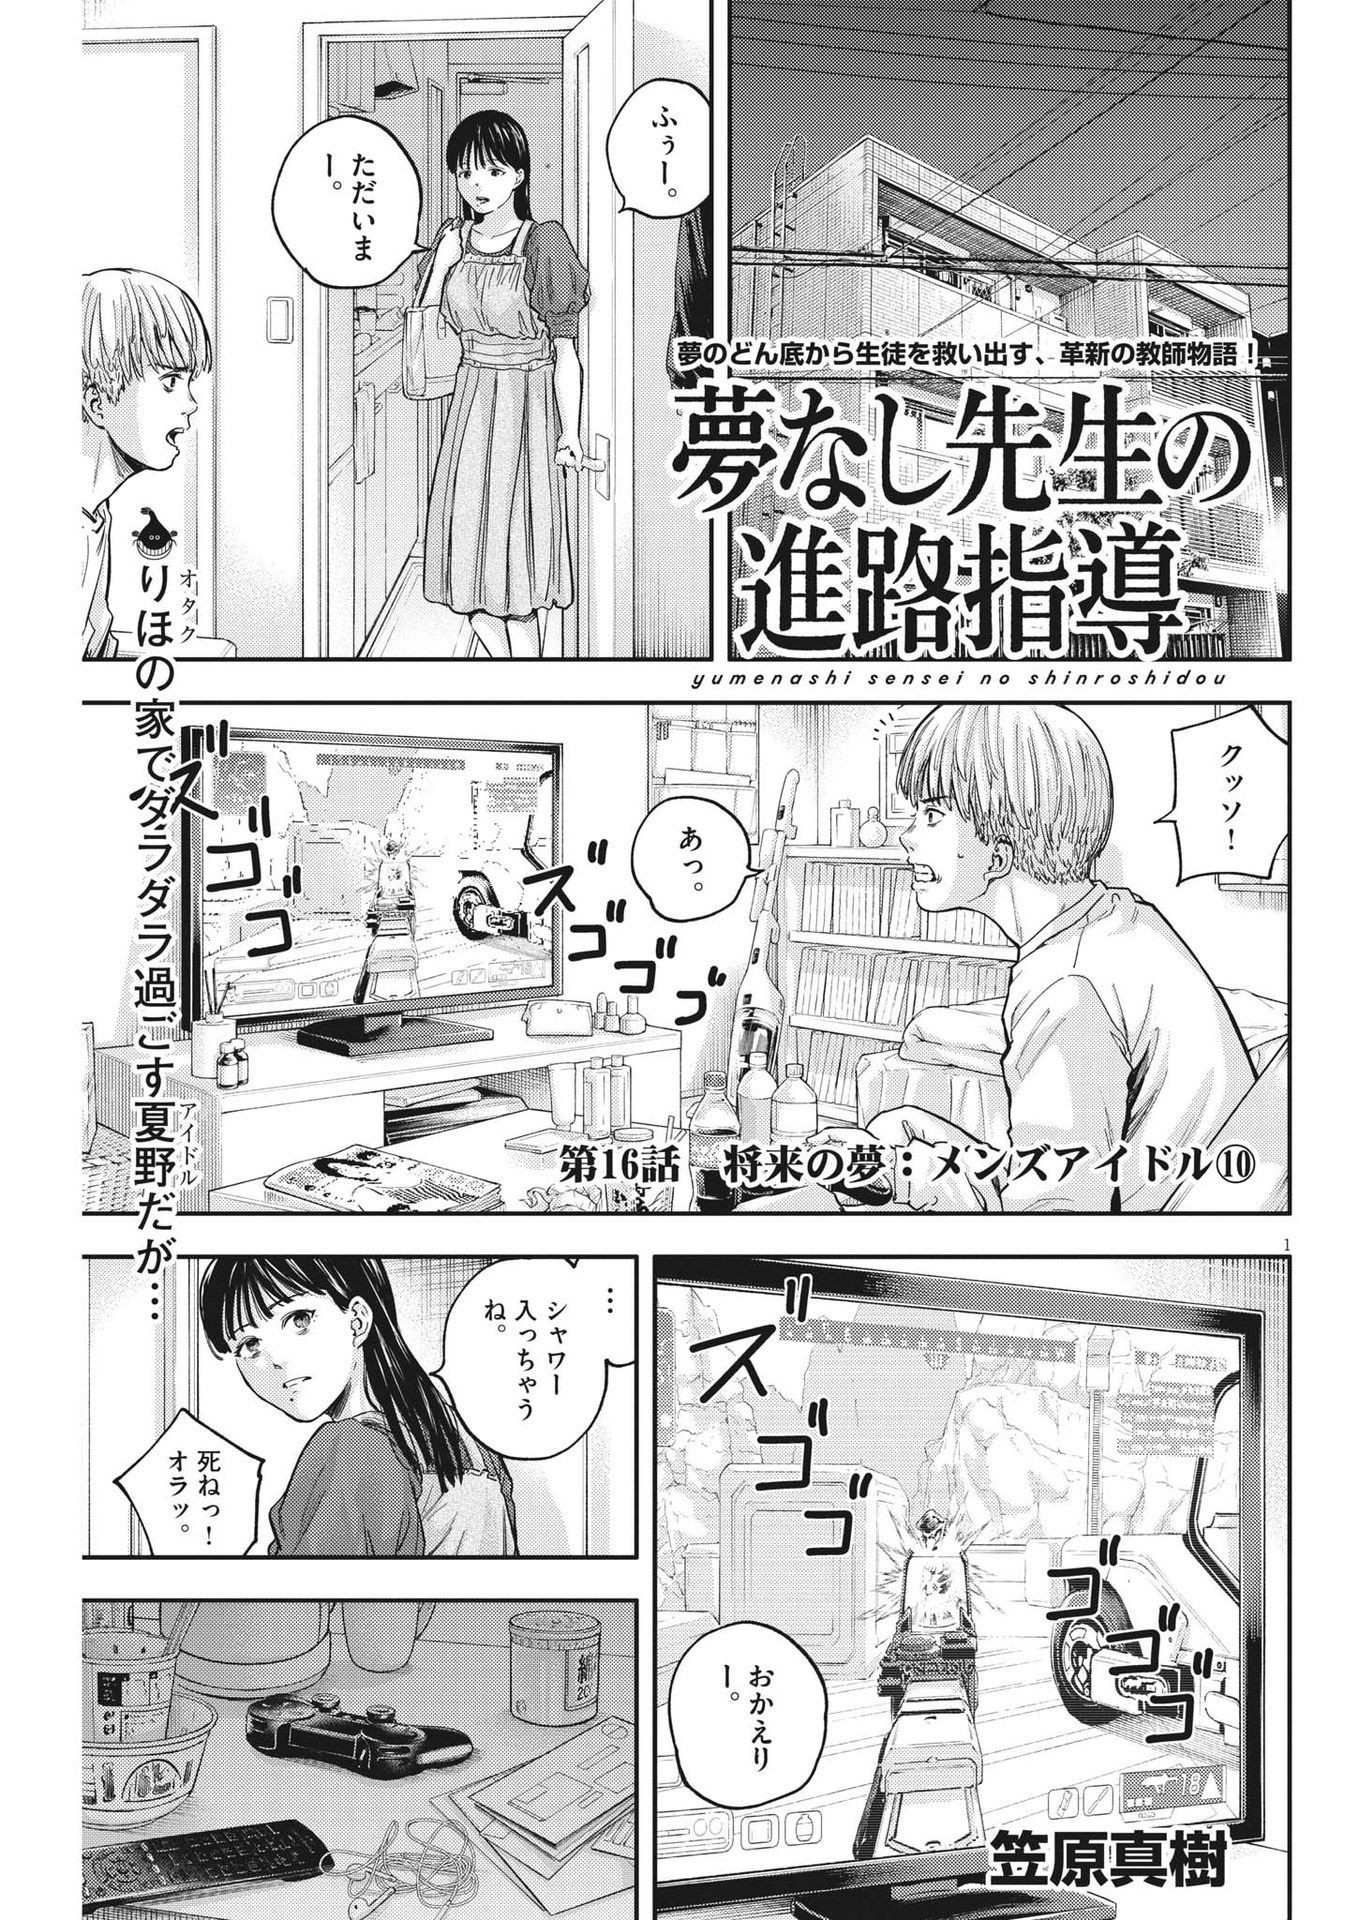 Yumenashi-sensei no Shinroshidou - Chapter 16 - Page 1